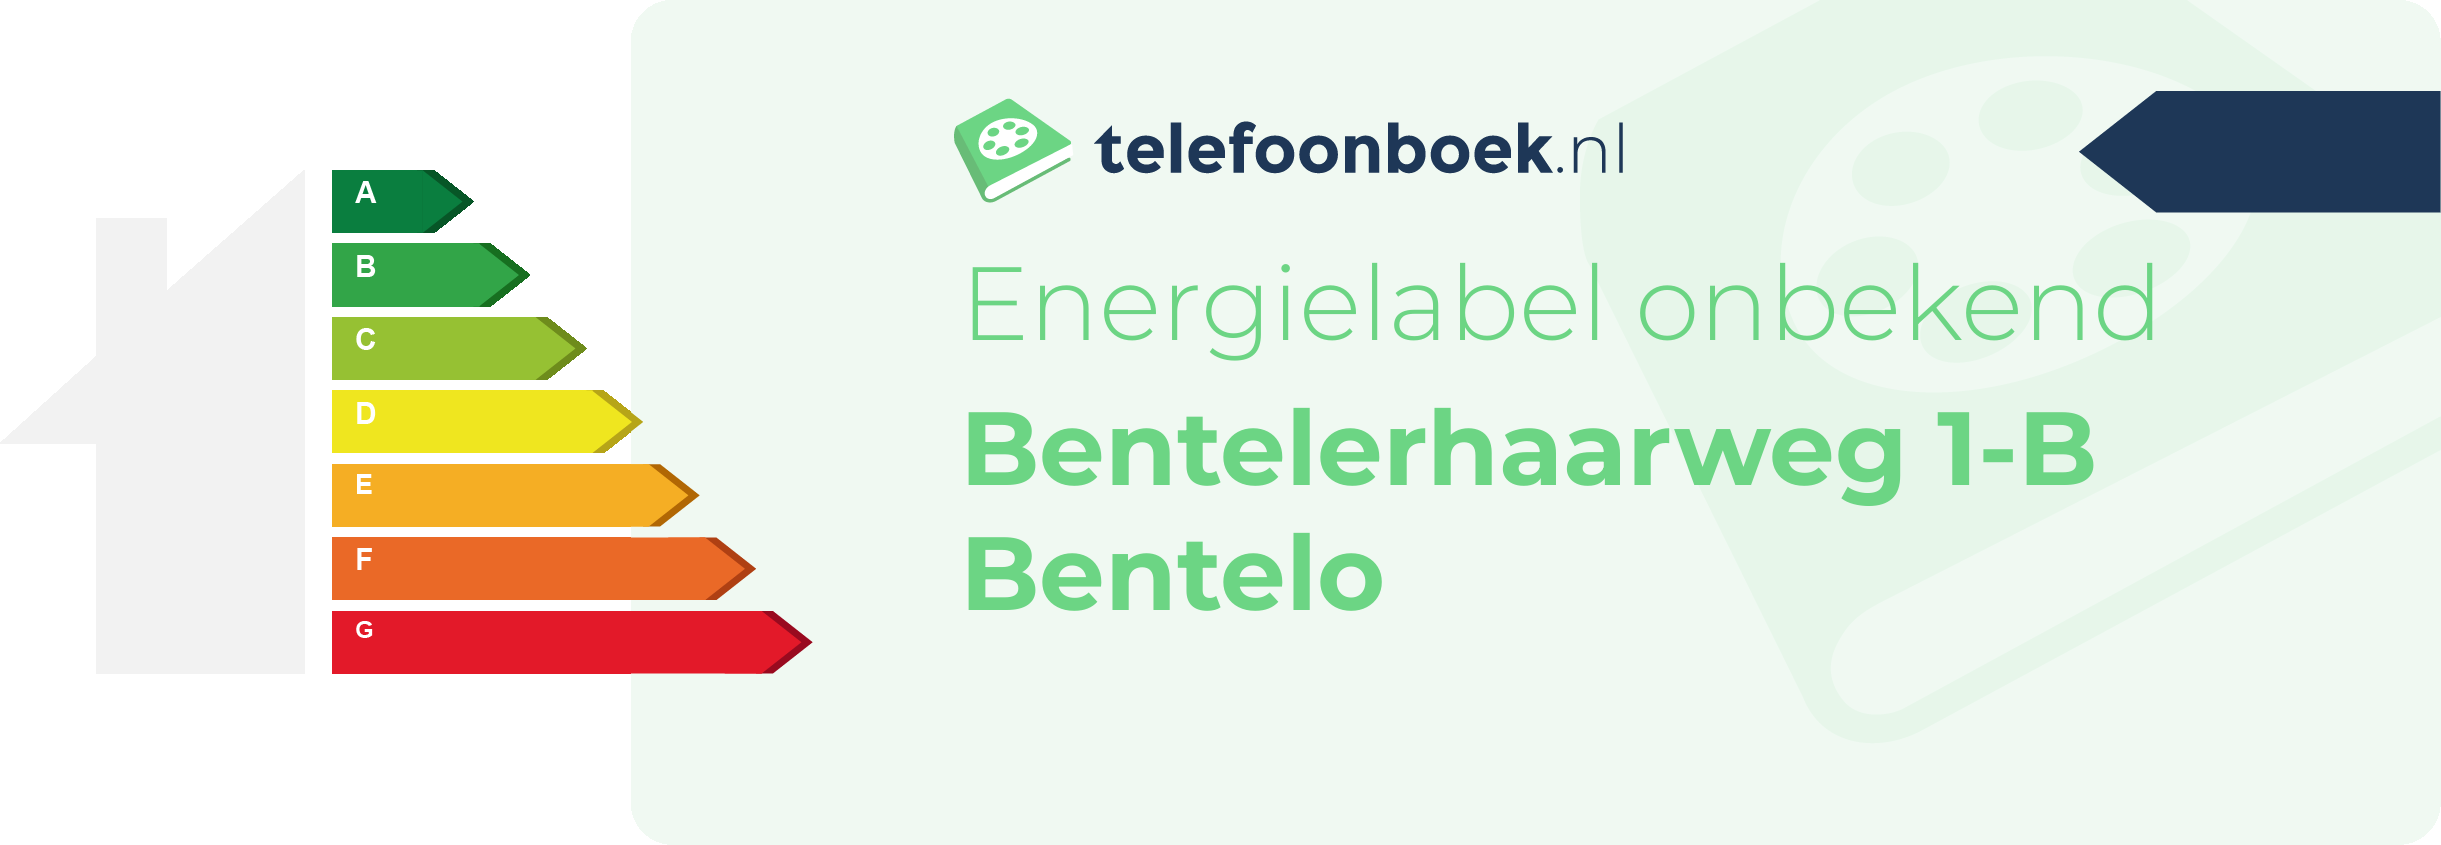 Energielabel Bentelerhaarweg 1-B Bentelo